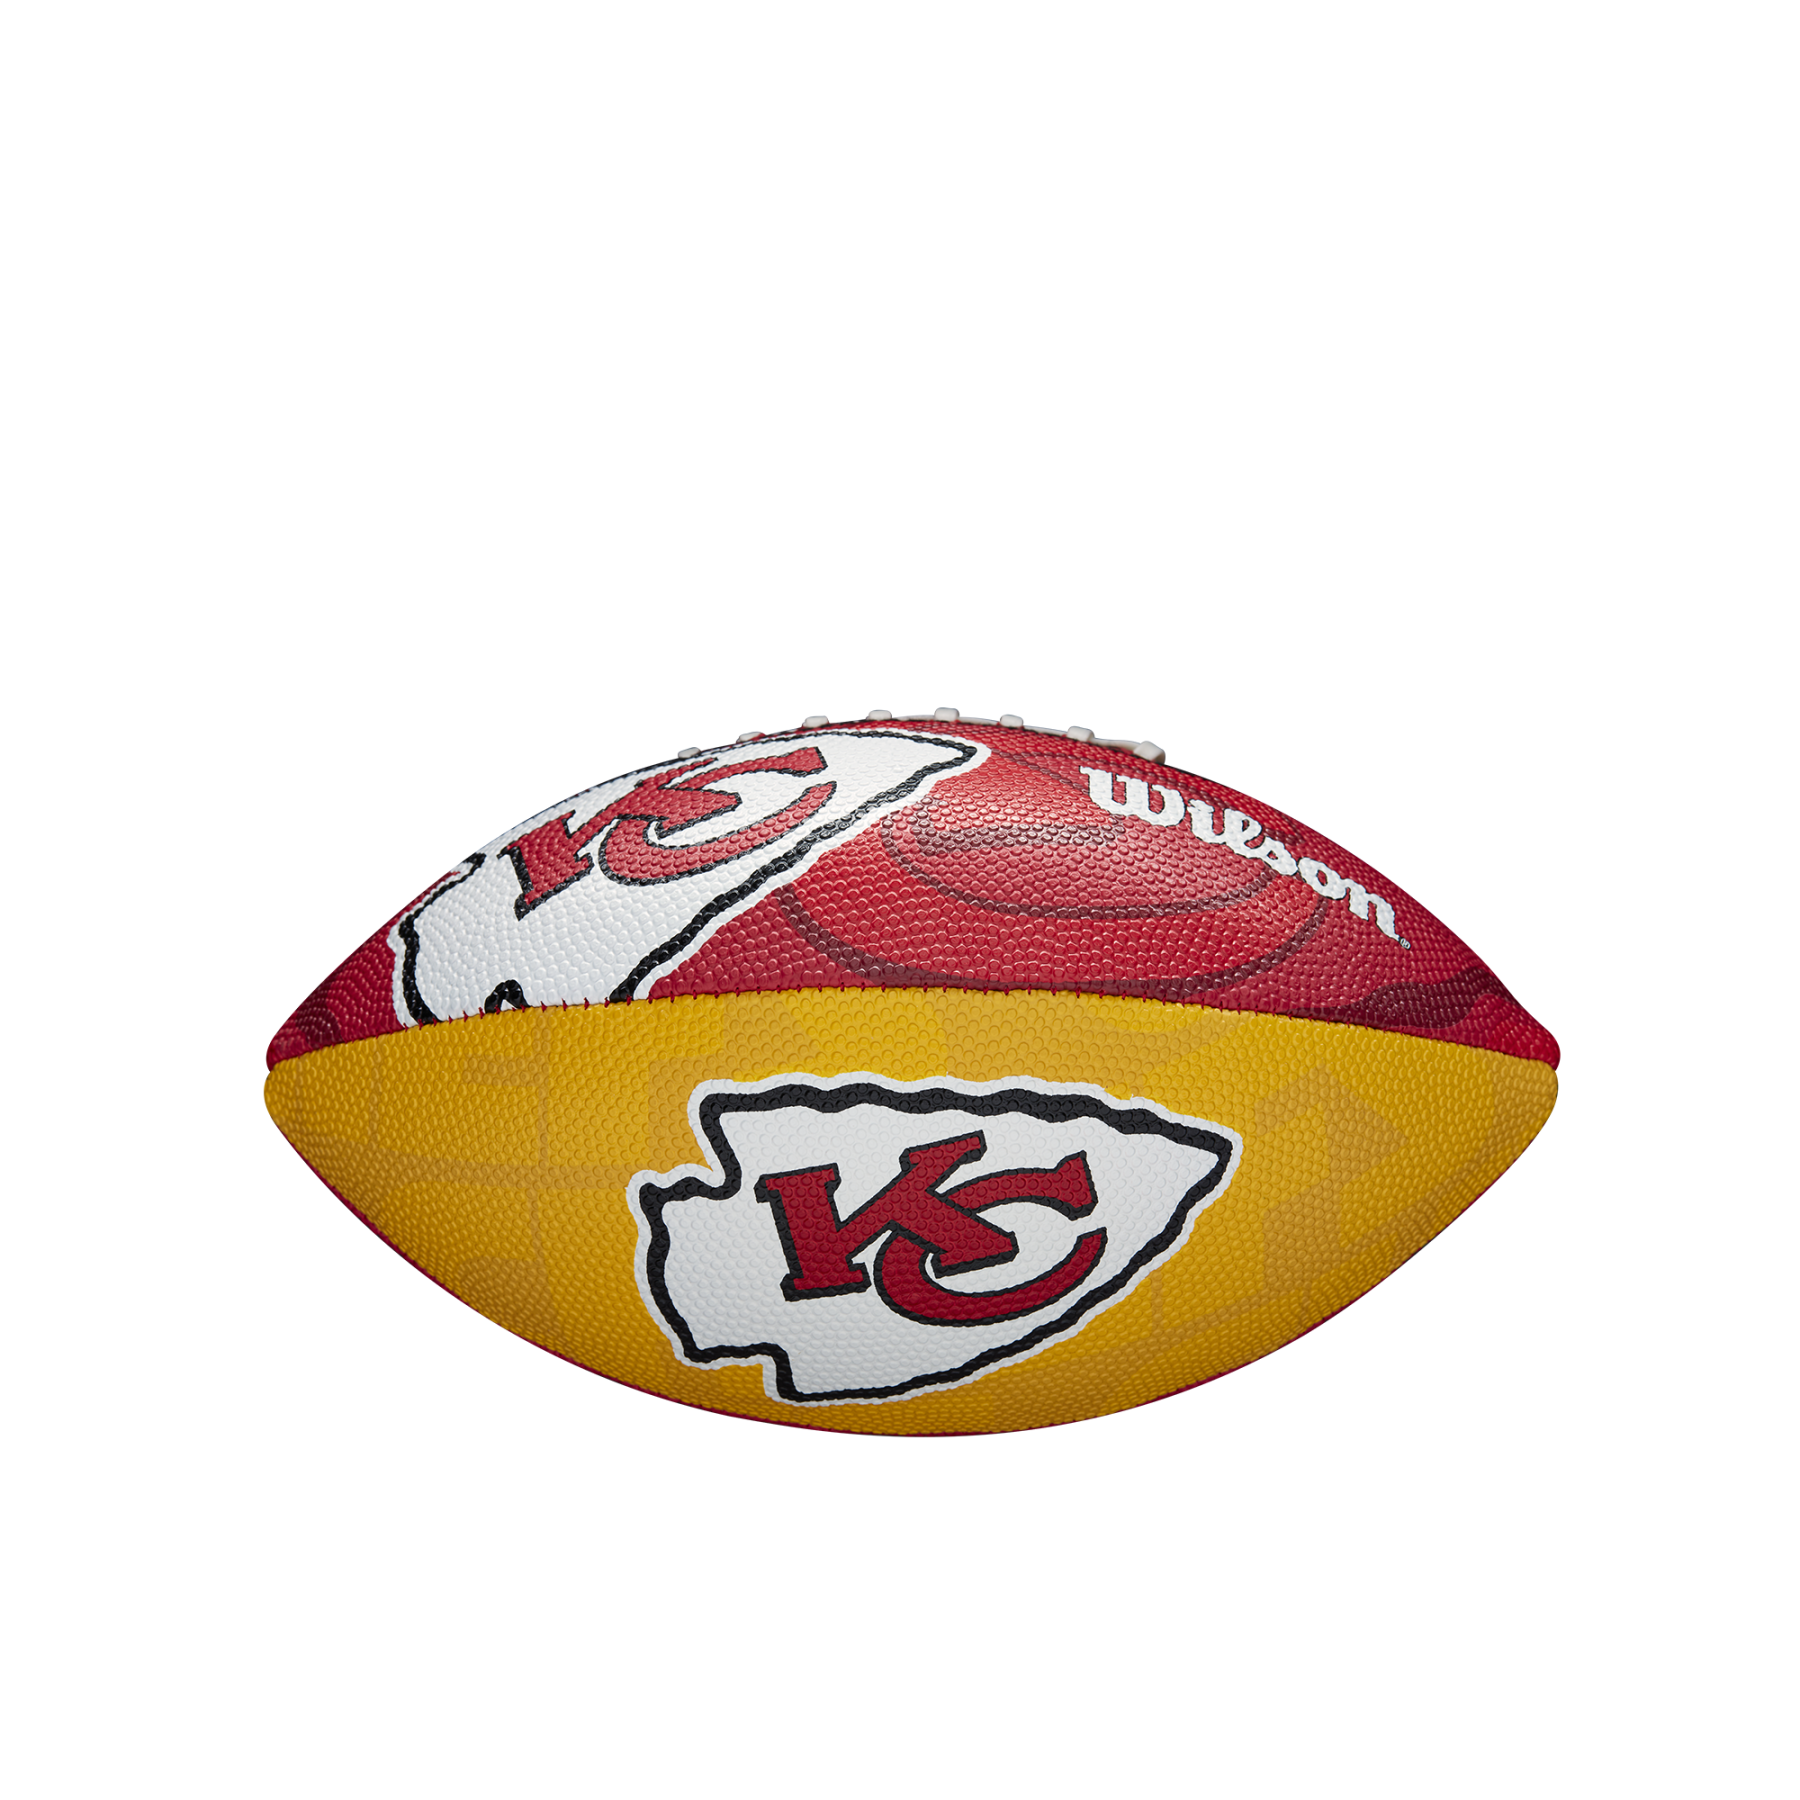 Bal dla dzieci Wilson Chiefs NFL Logo